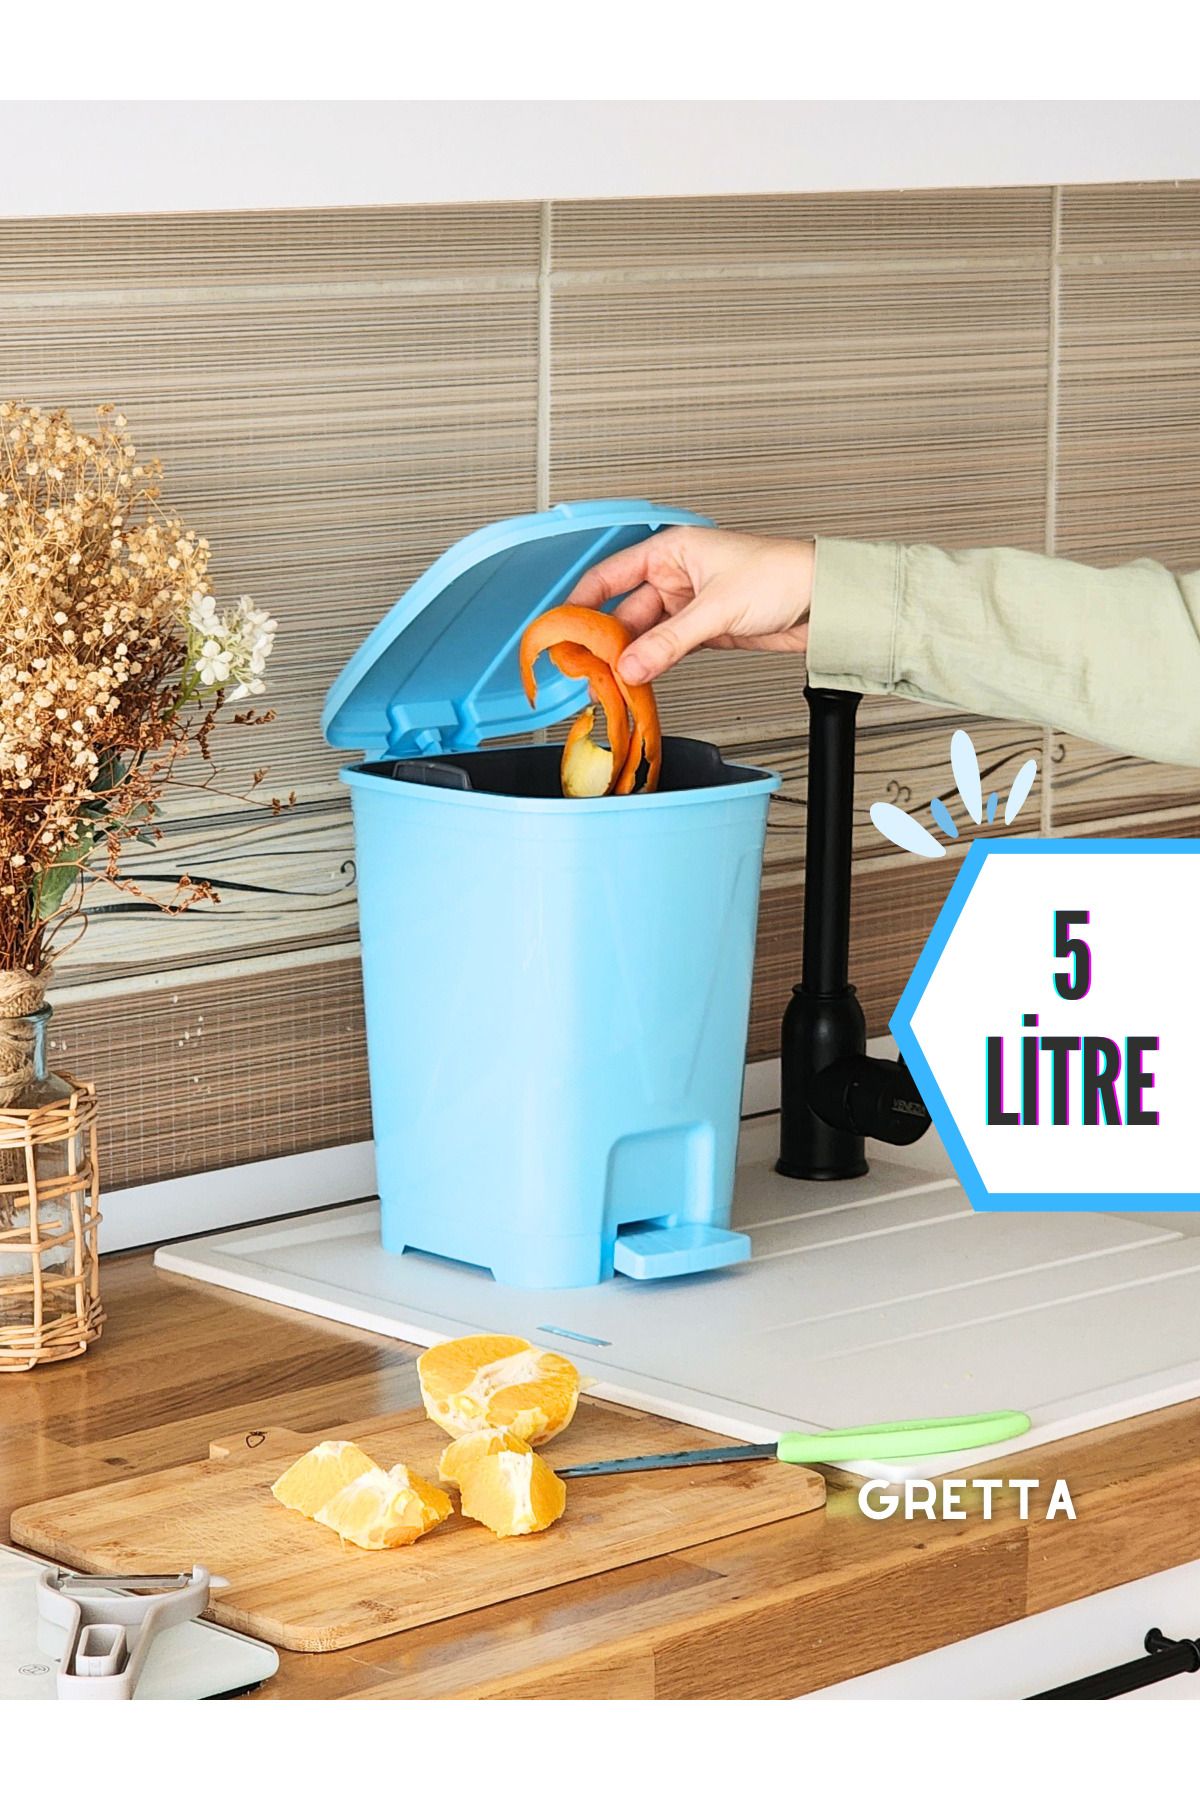 Gretta 5 Litre Açık Mavi Kare Pedallı Çöp Kovası - Mutfak Tezgah Üstü, Banyo Ve Ofis Için Çöp Kovası